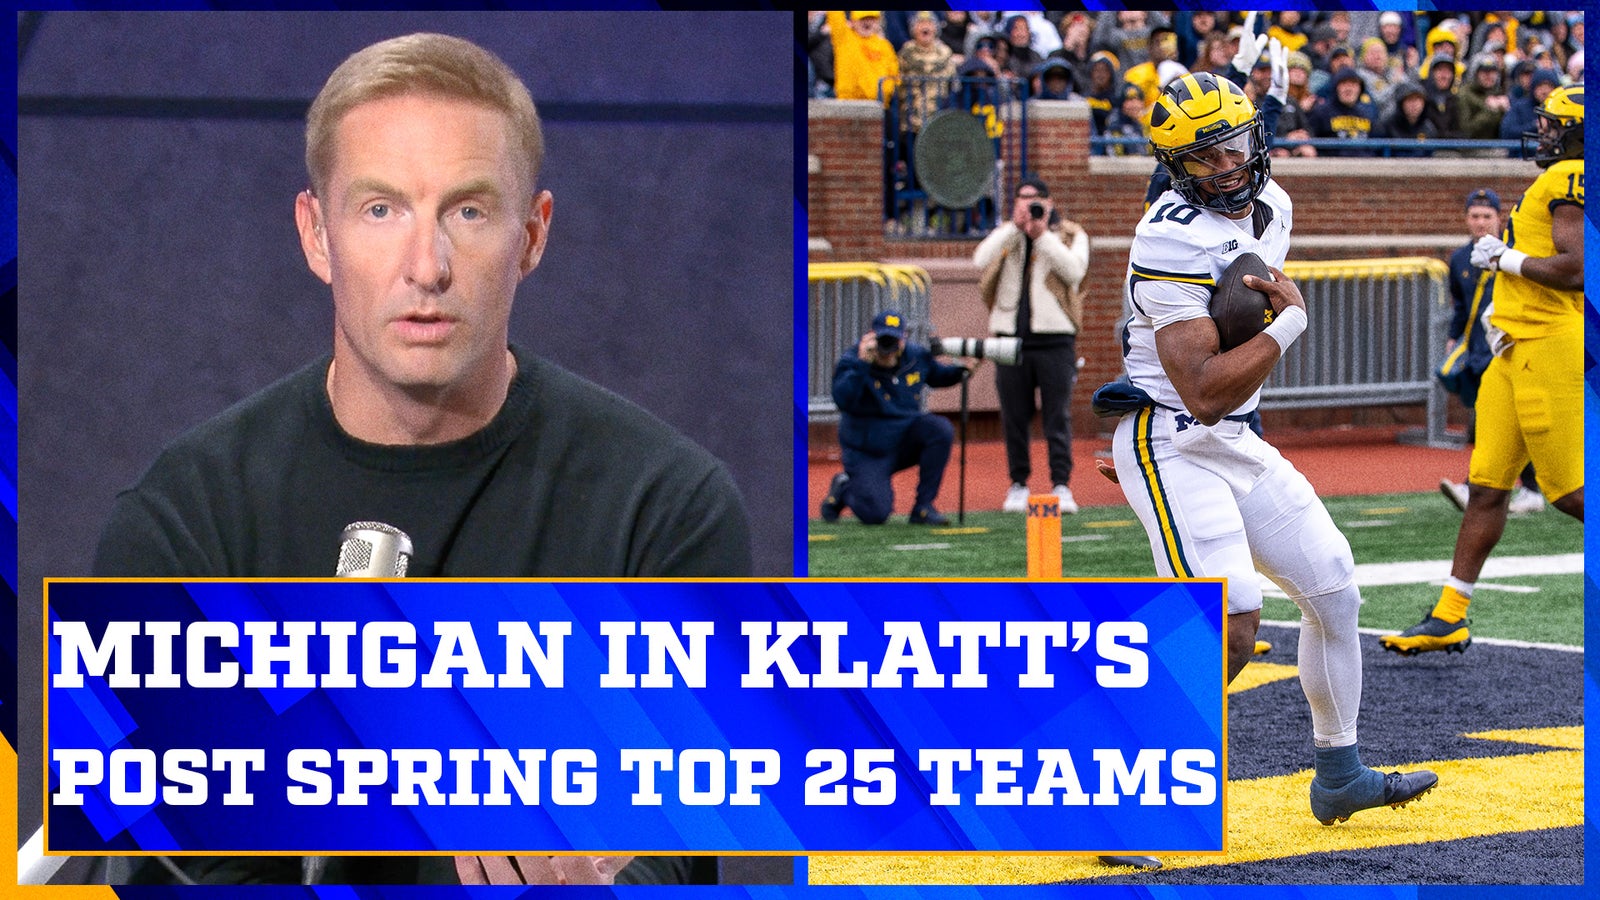 Ohio State, Michigan and Utah in Joel Klatt's Top 25 after spring